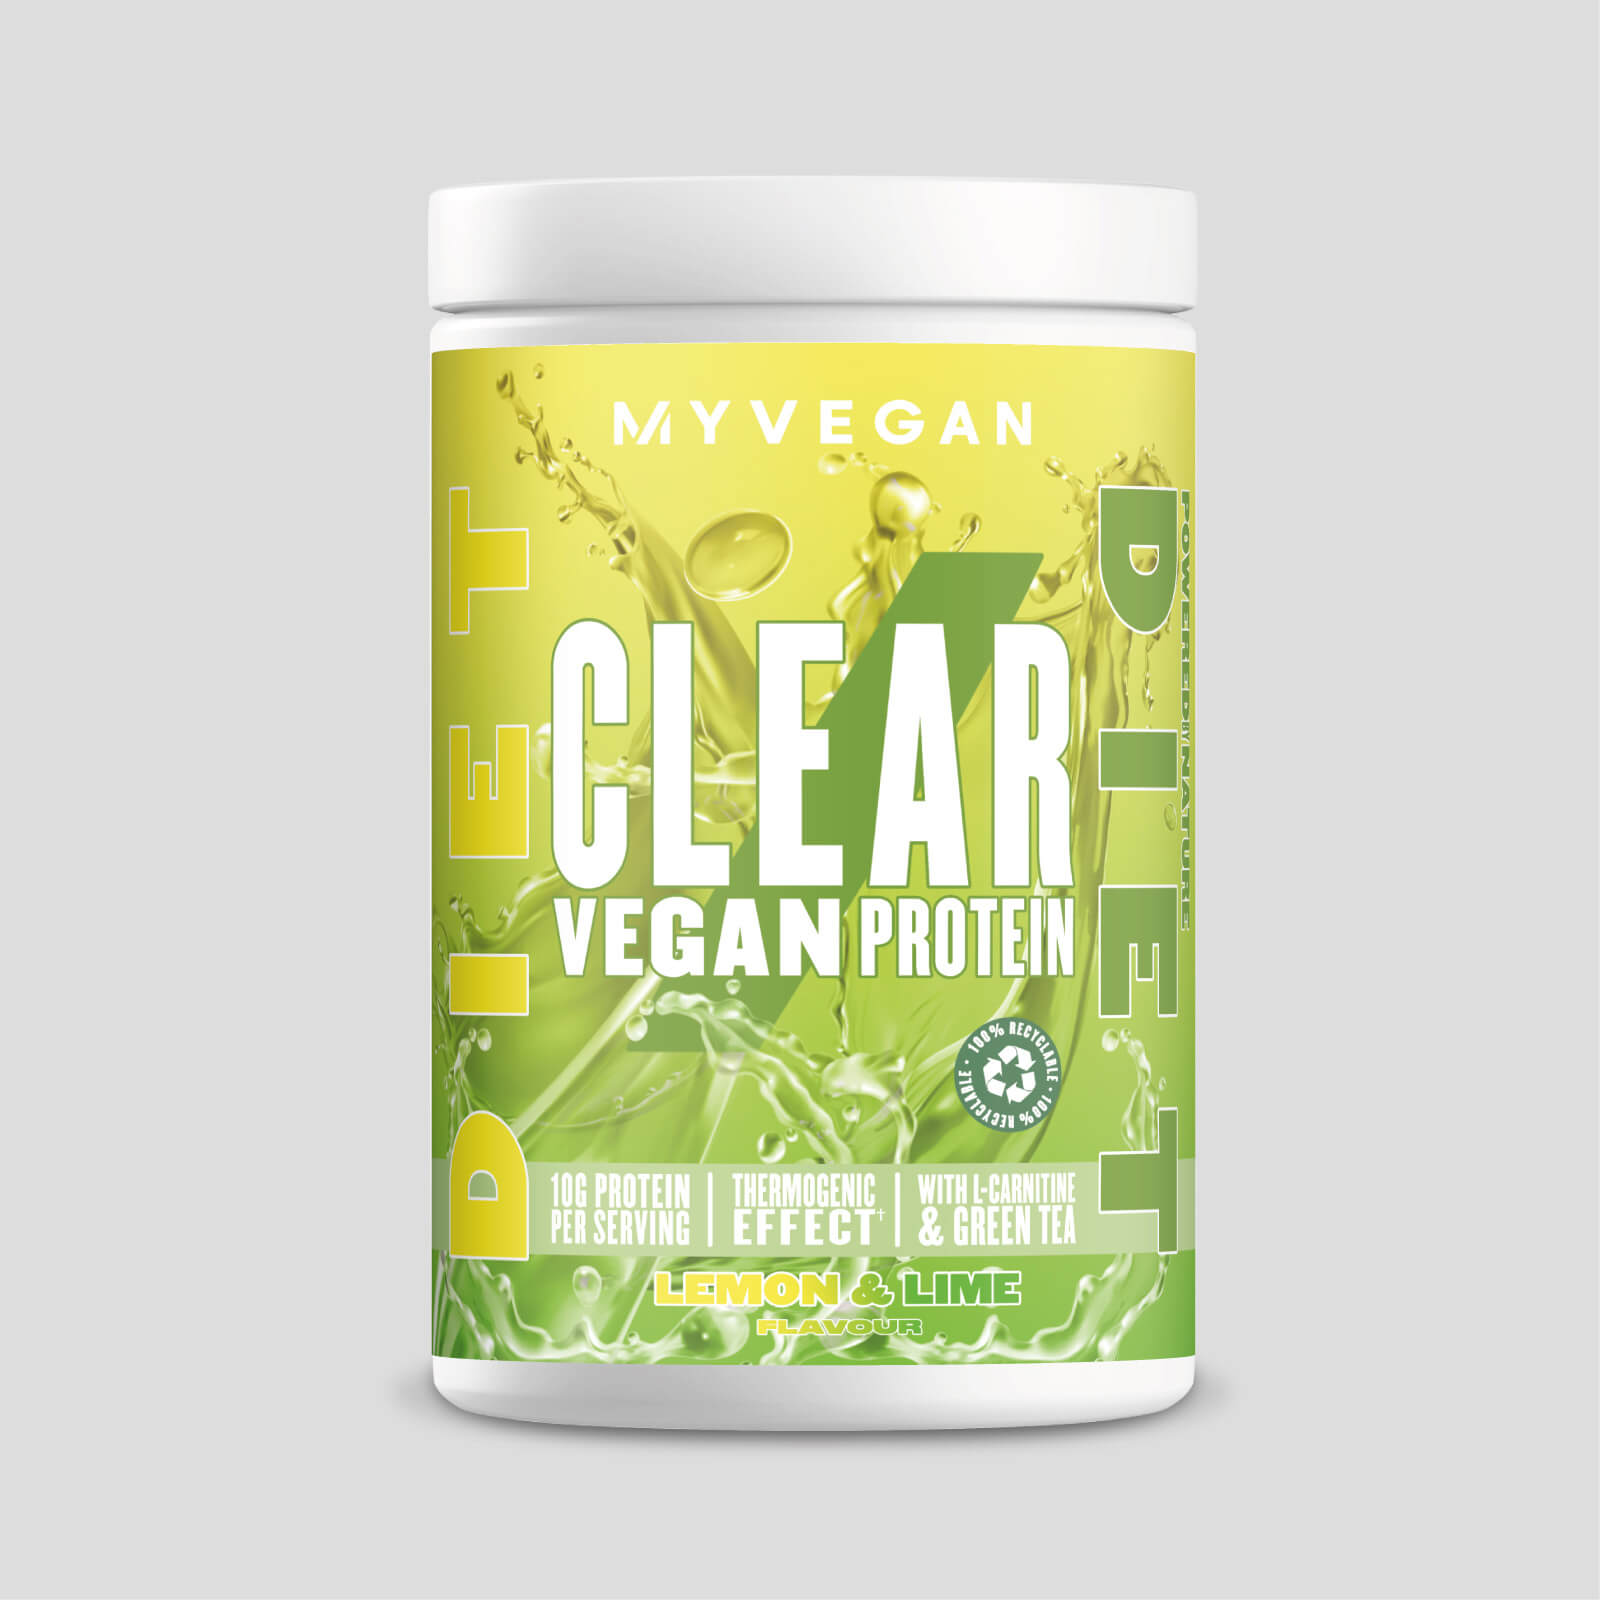 Clear Vegan Protein Diet - 20servings - Lemon & Lime